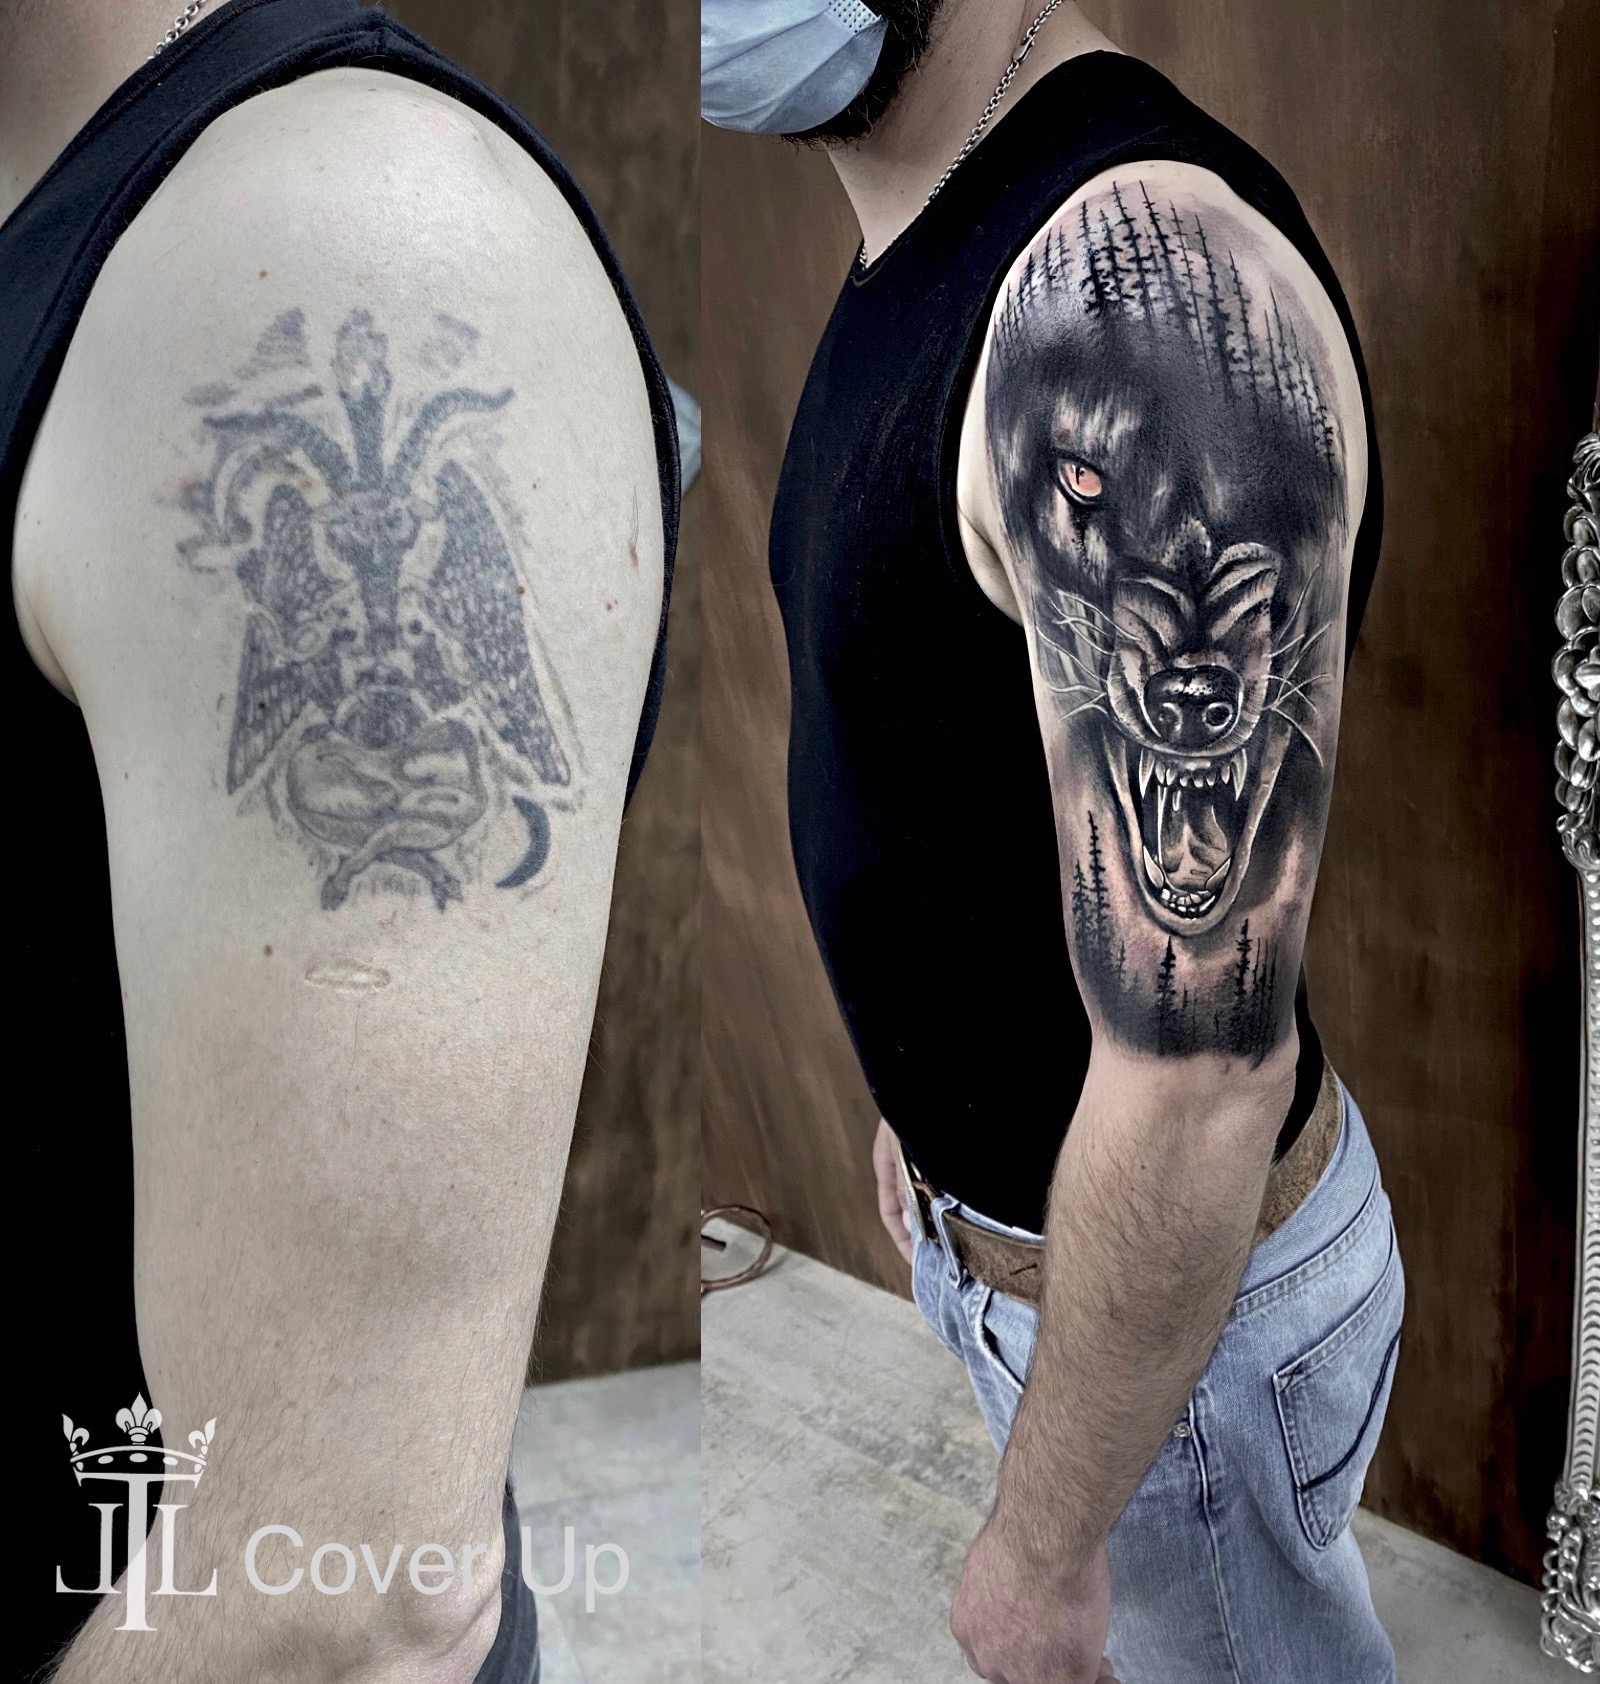 Cover Up Tattoos - Tattoo Bern